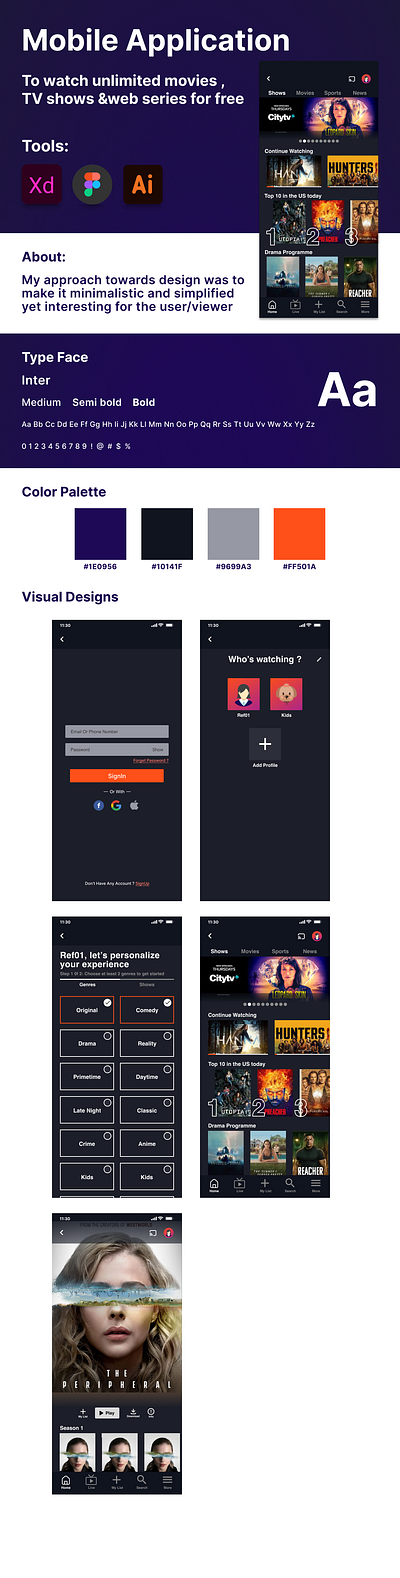 OTT Platform figma mobile app design ott mobile application design product design uiux design